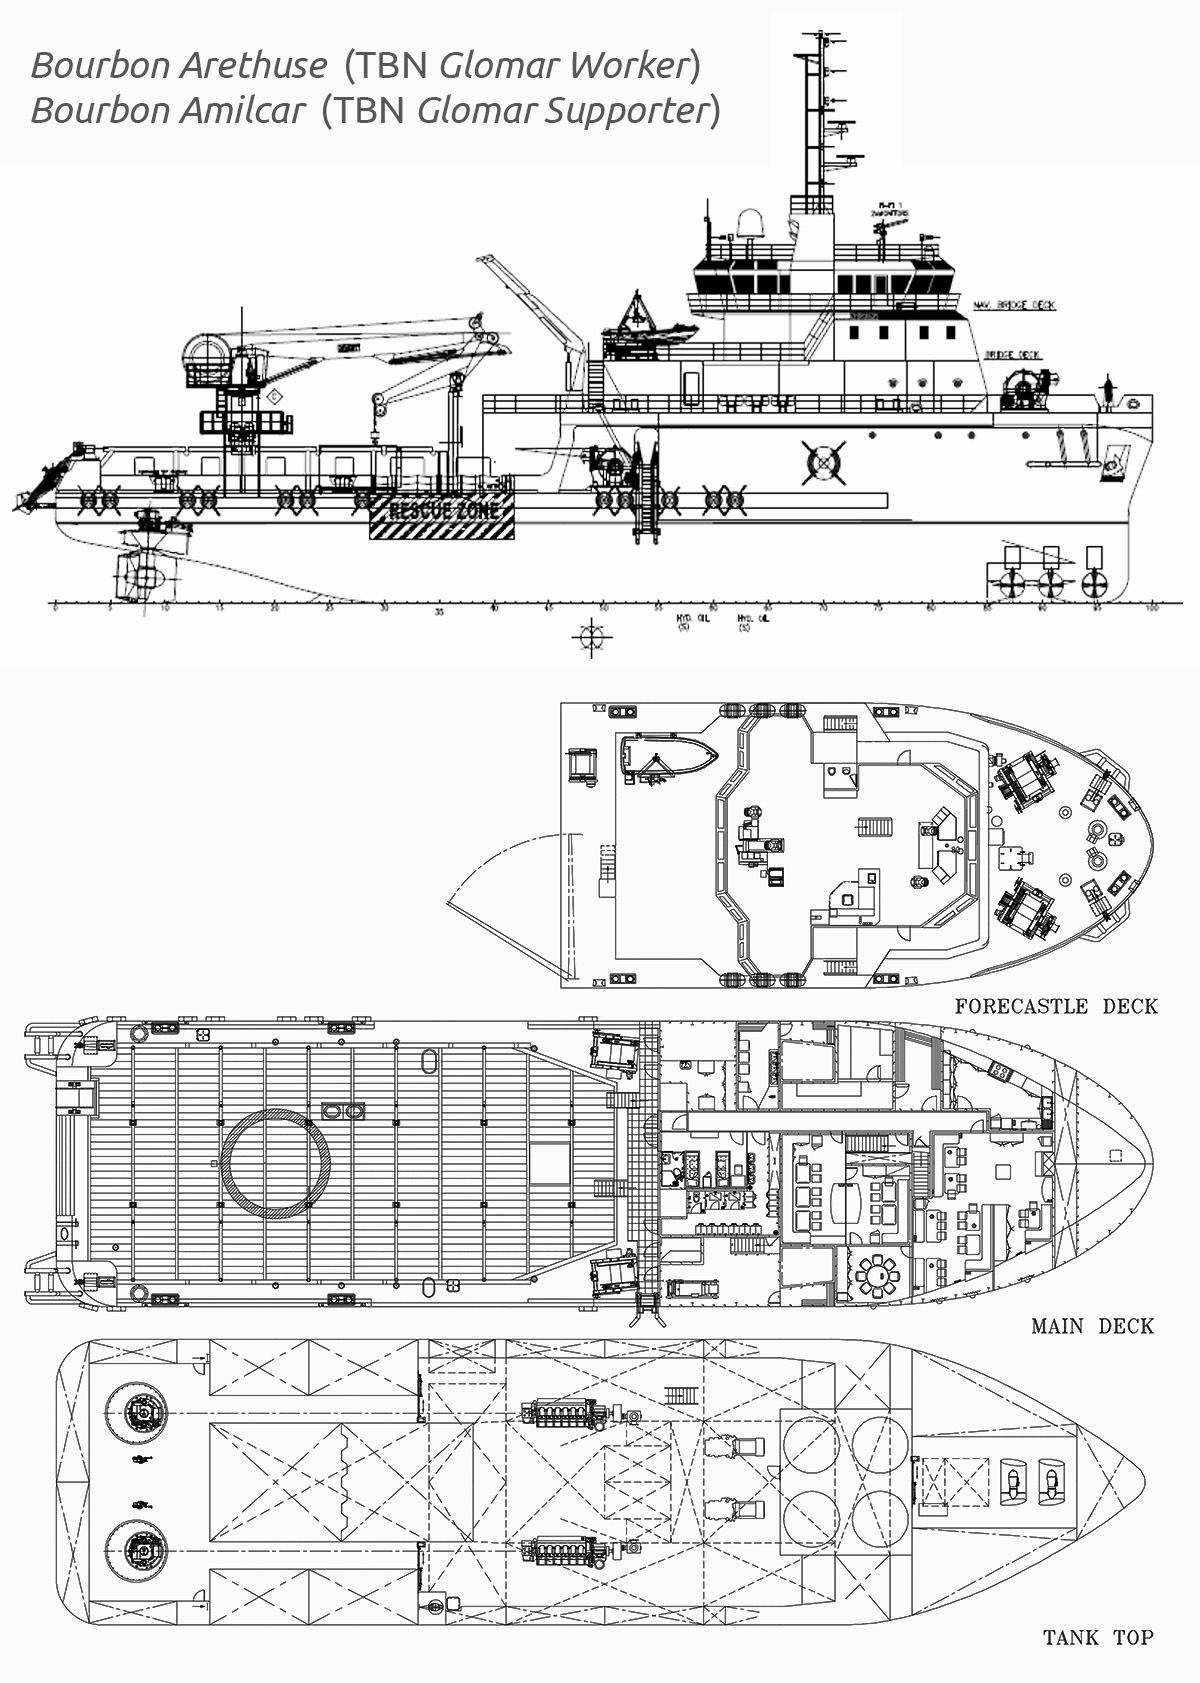 Plan ogólny statków Bourbon Amiclar i Bourbon Arethuse